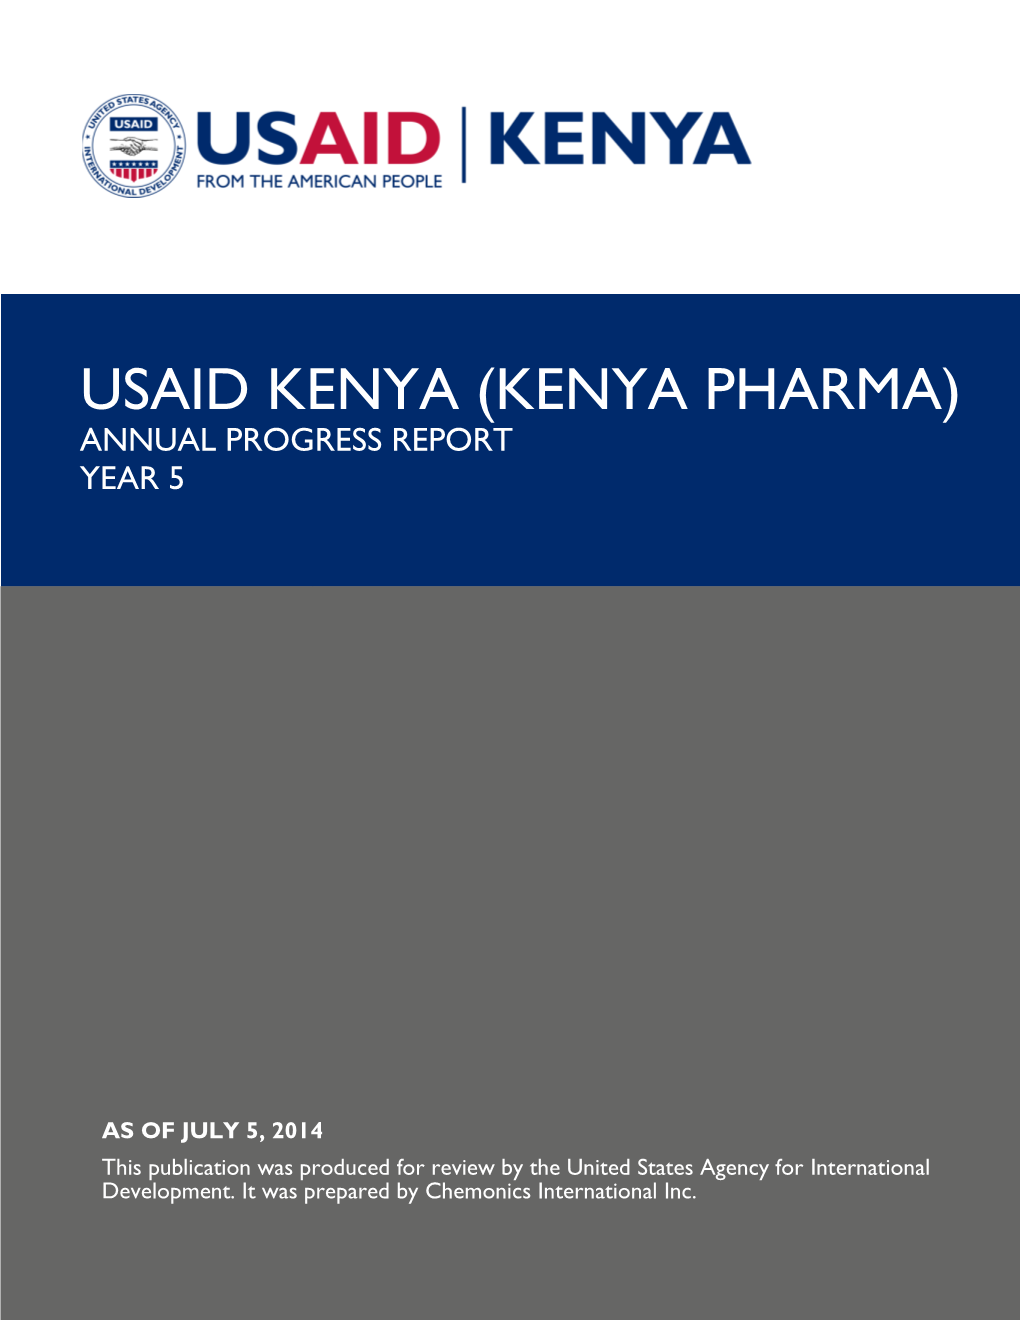 Kenya Pharma